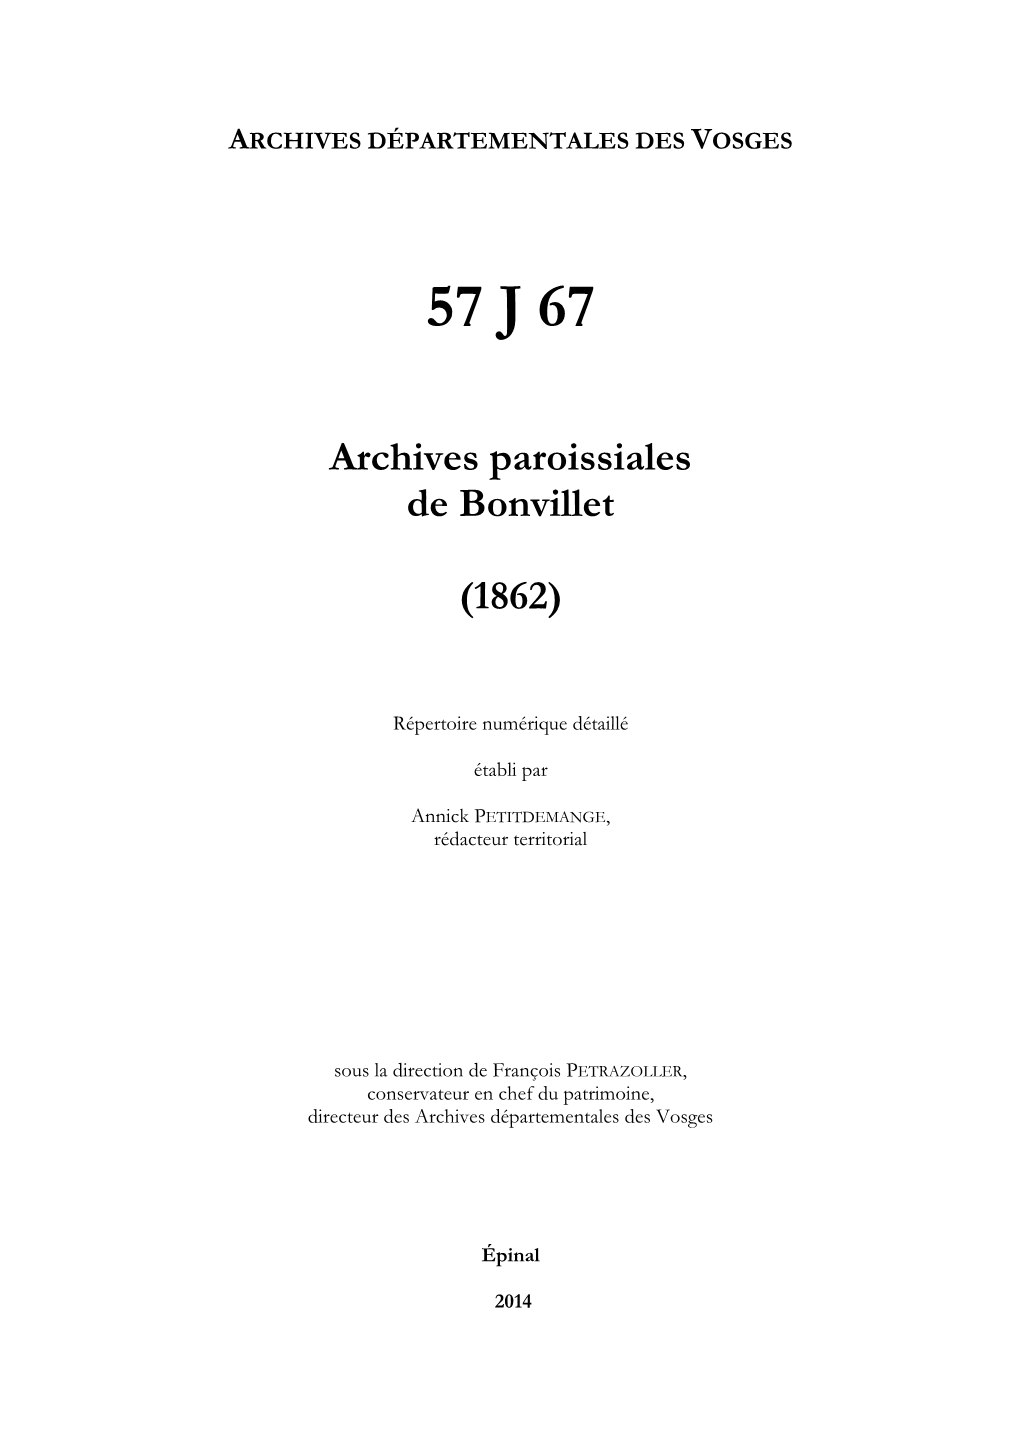 Archives Paroissiales De Bonvillet